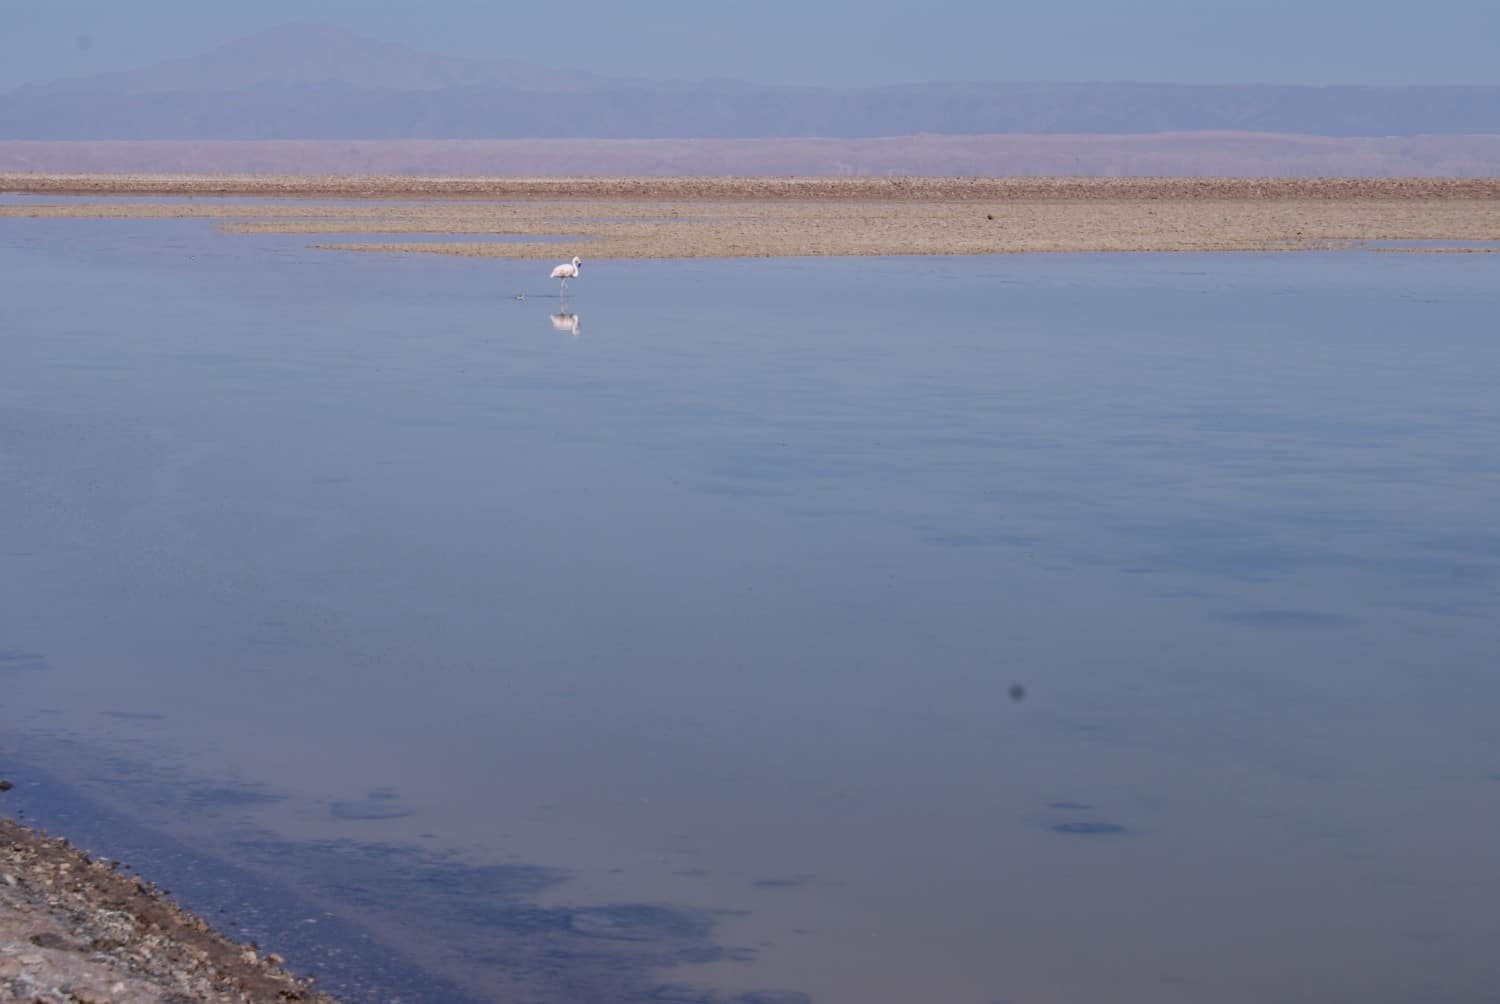 Flamingo at Laguna Chaxa, Atacama Desert Photos 